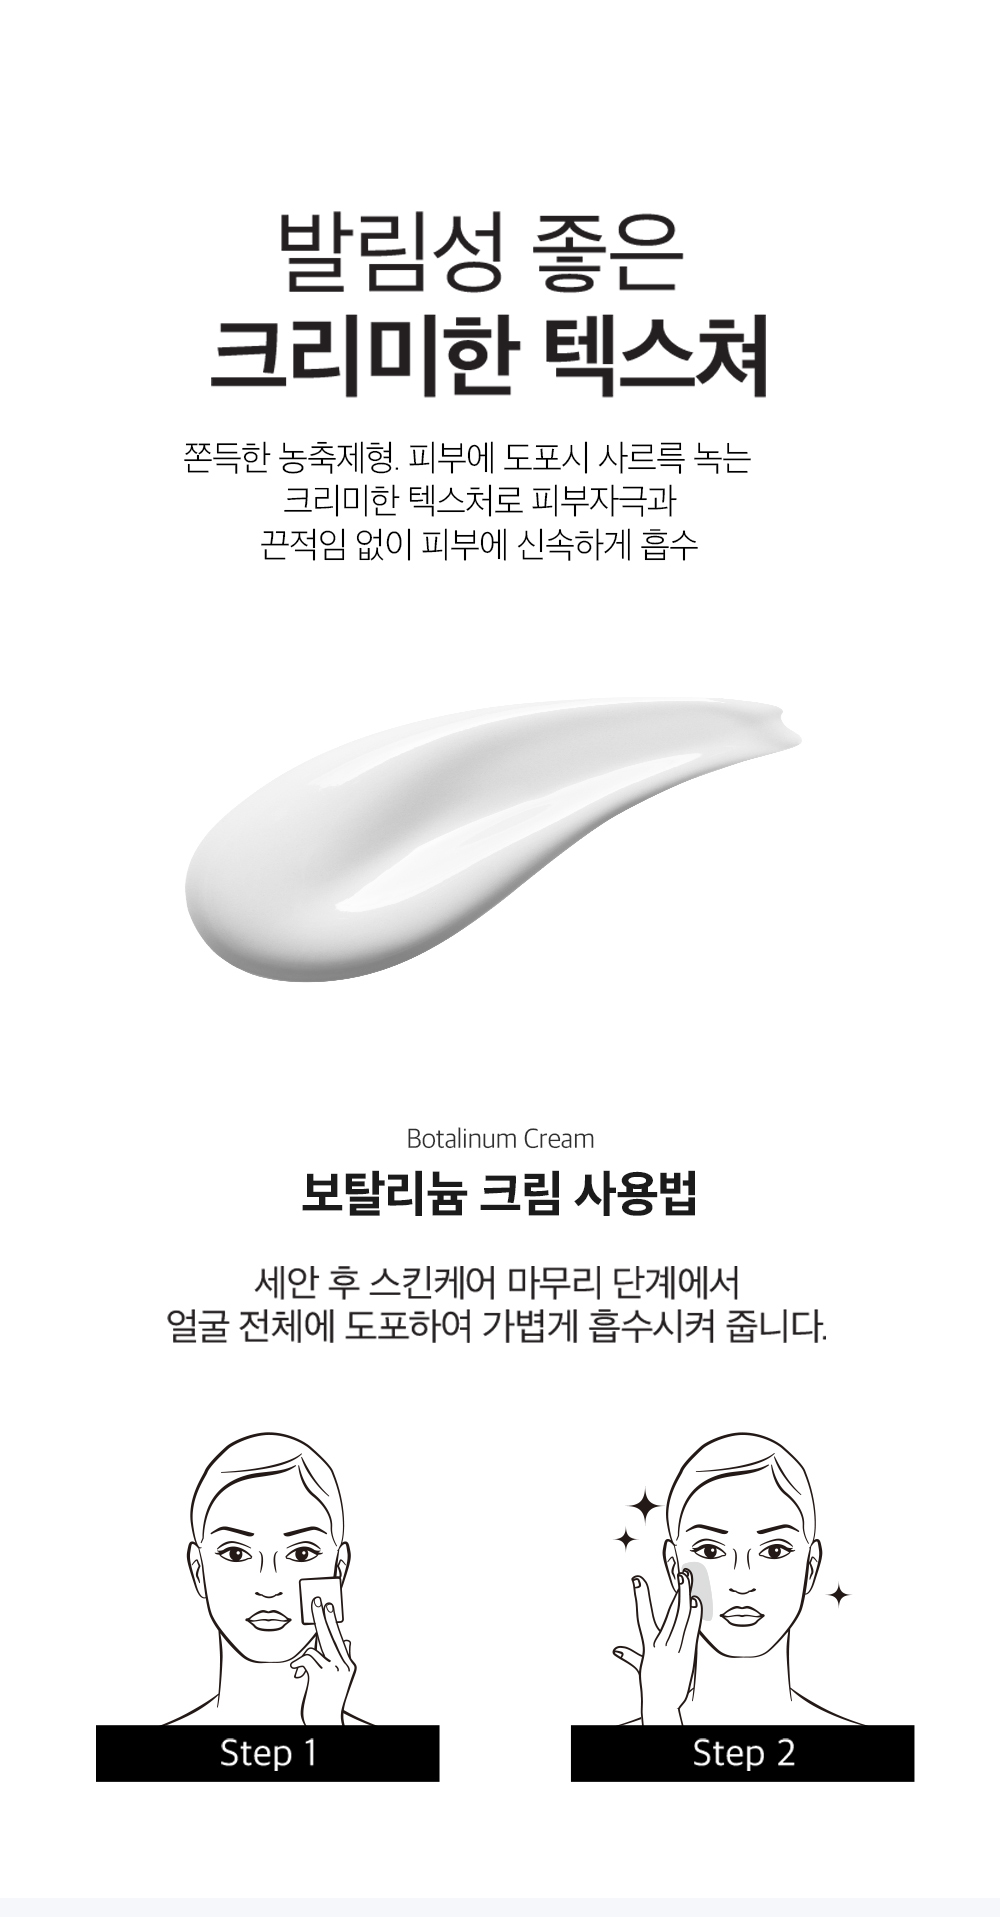 [MEDITIME] Botalinum Concentrate Care Cream